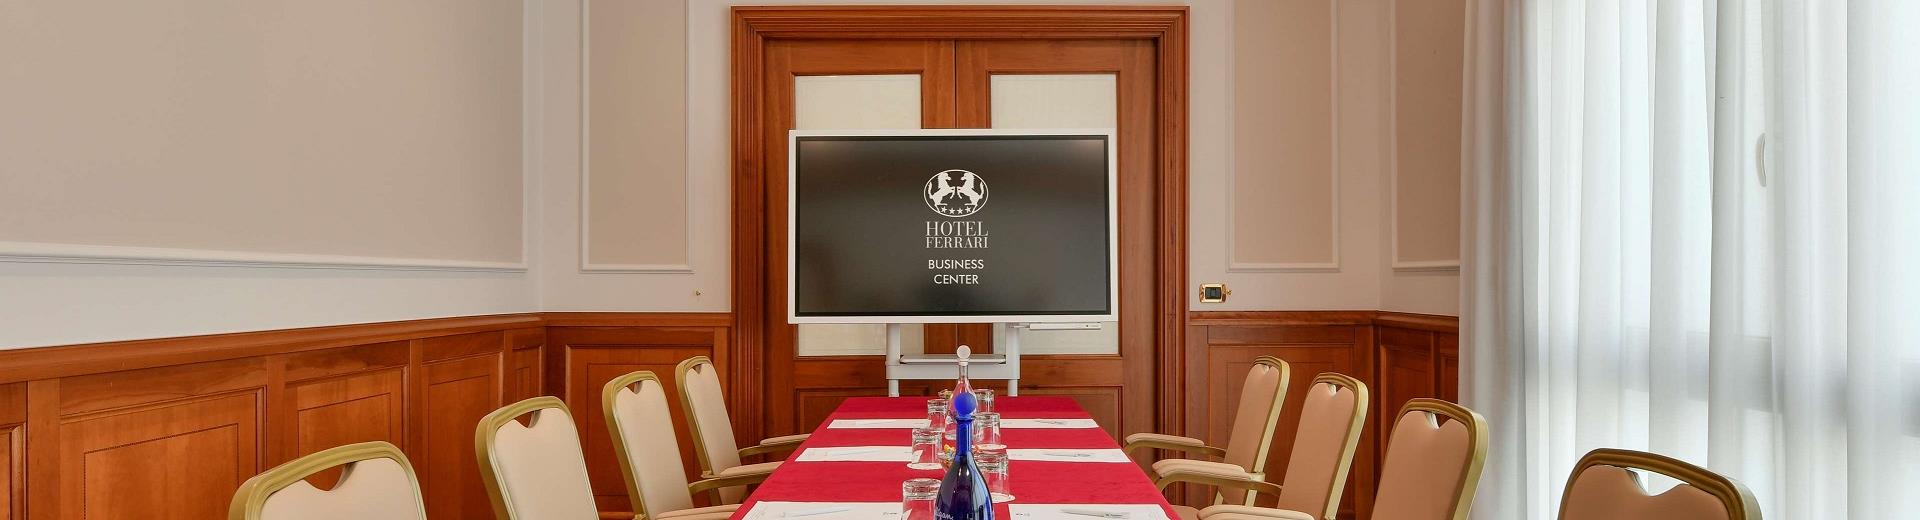 Organizza i tuoi meeting ed eventi a Napoli con Hotel Ferrari: scopri i dettagli delle nostre sale, con capienza da 20 a 300 persone!